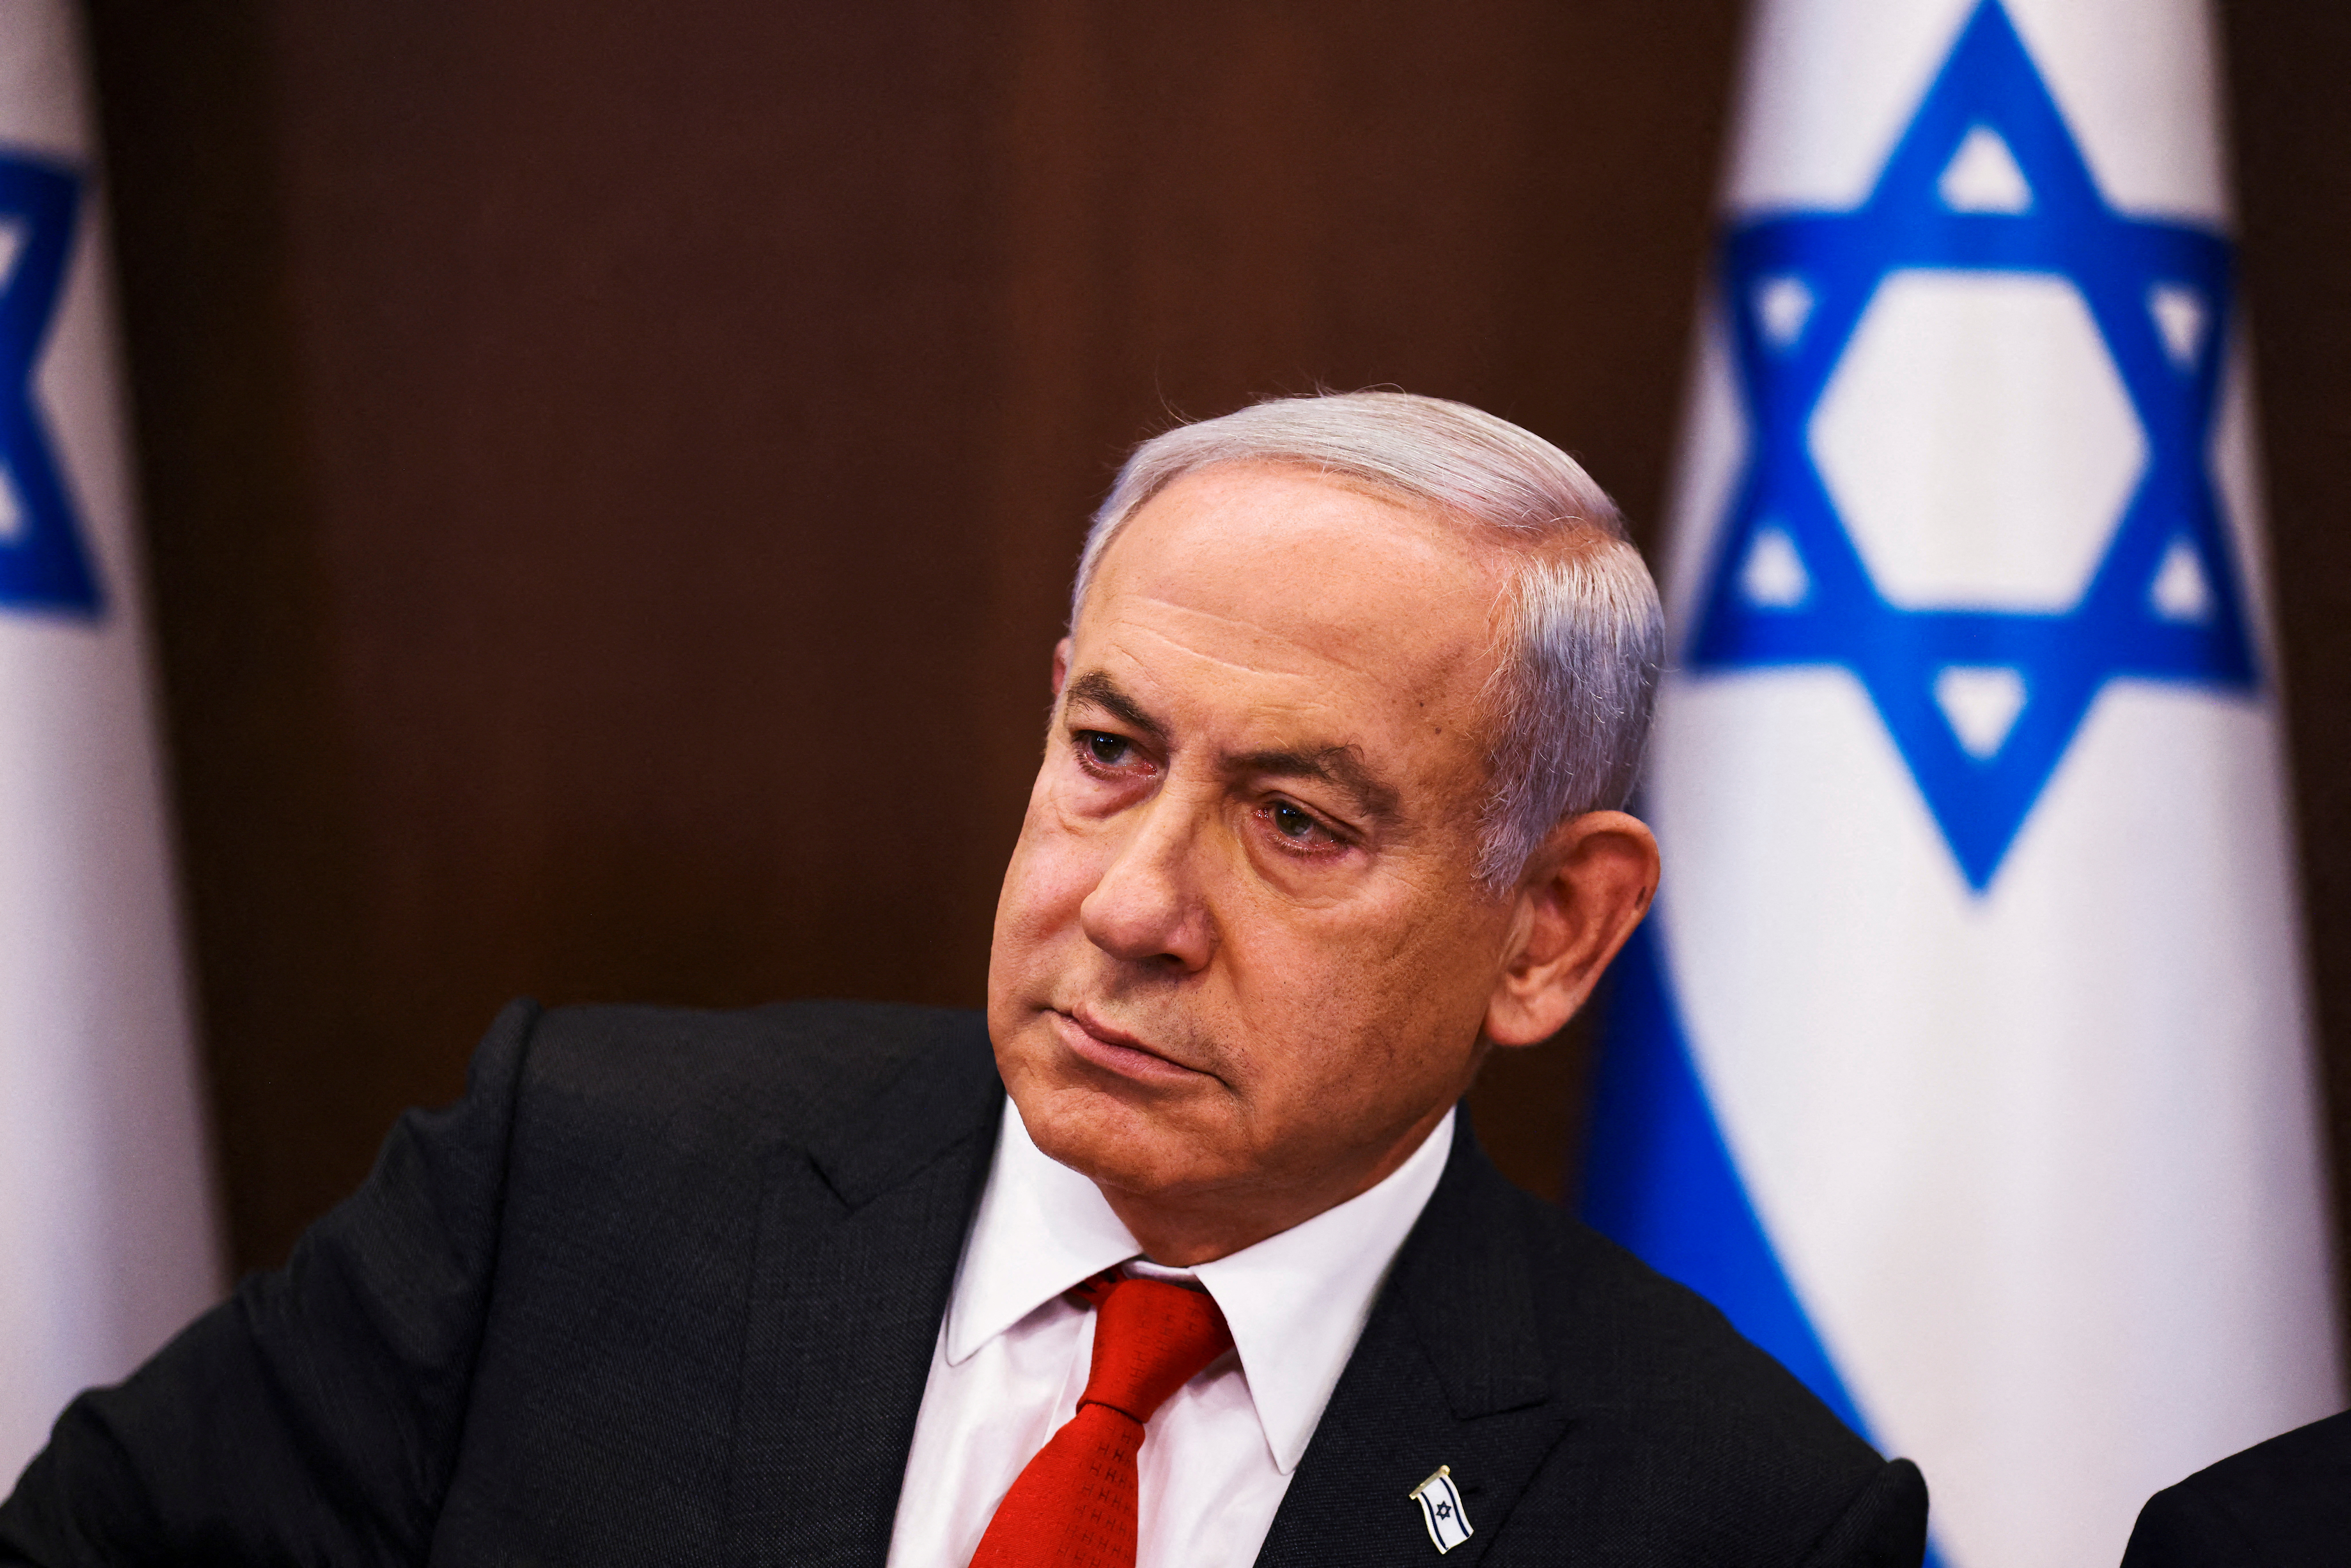 En vivo: Netanyahu da un mensaje en medio de protestas y huelgas por la reforma judicial en Israel